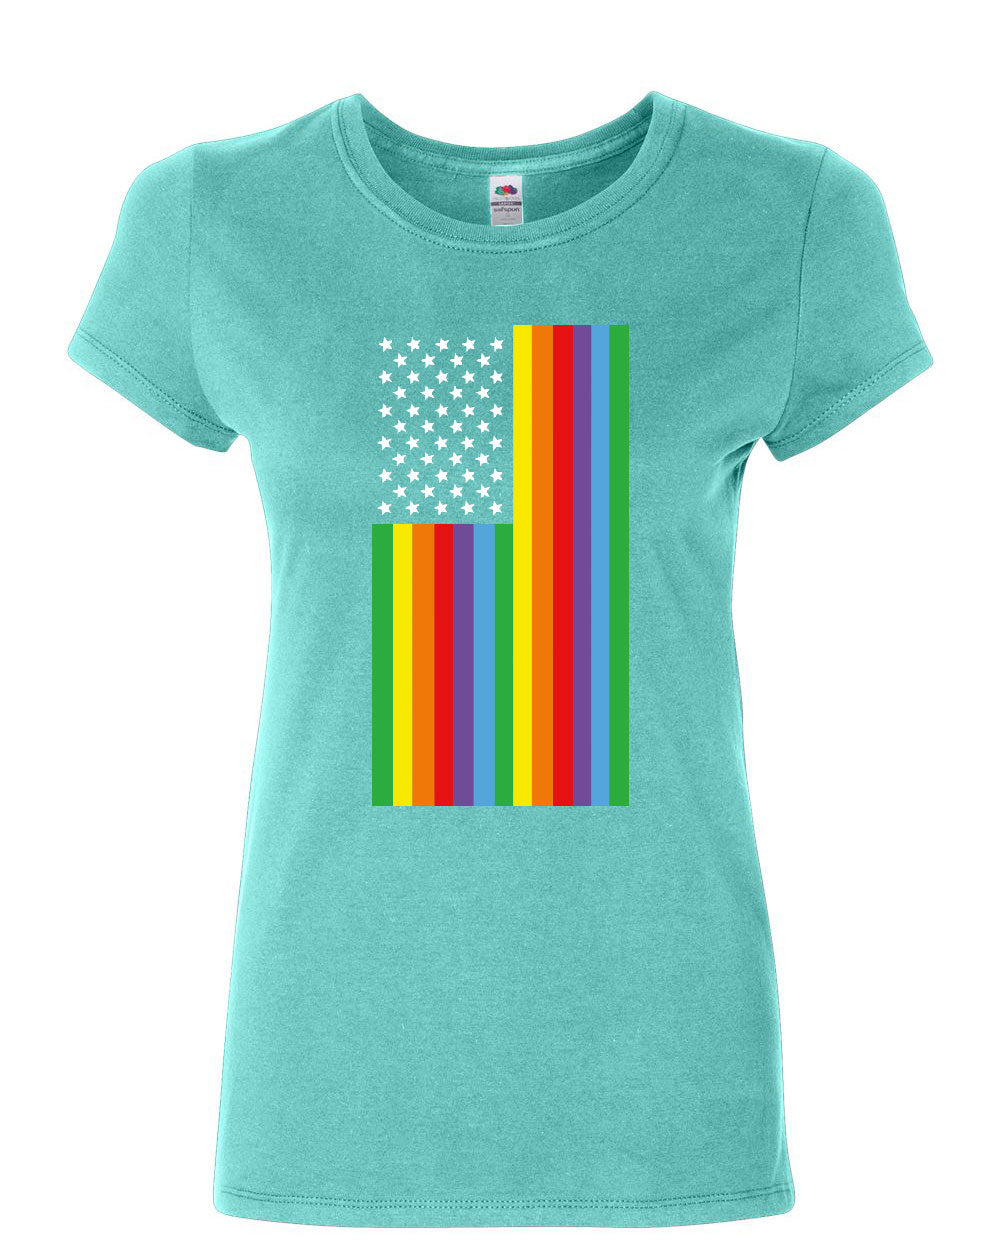 Gay Pride Rainbow Flag Cotton T Shirt Lgbtq Love Wins Equality Ebay